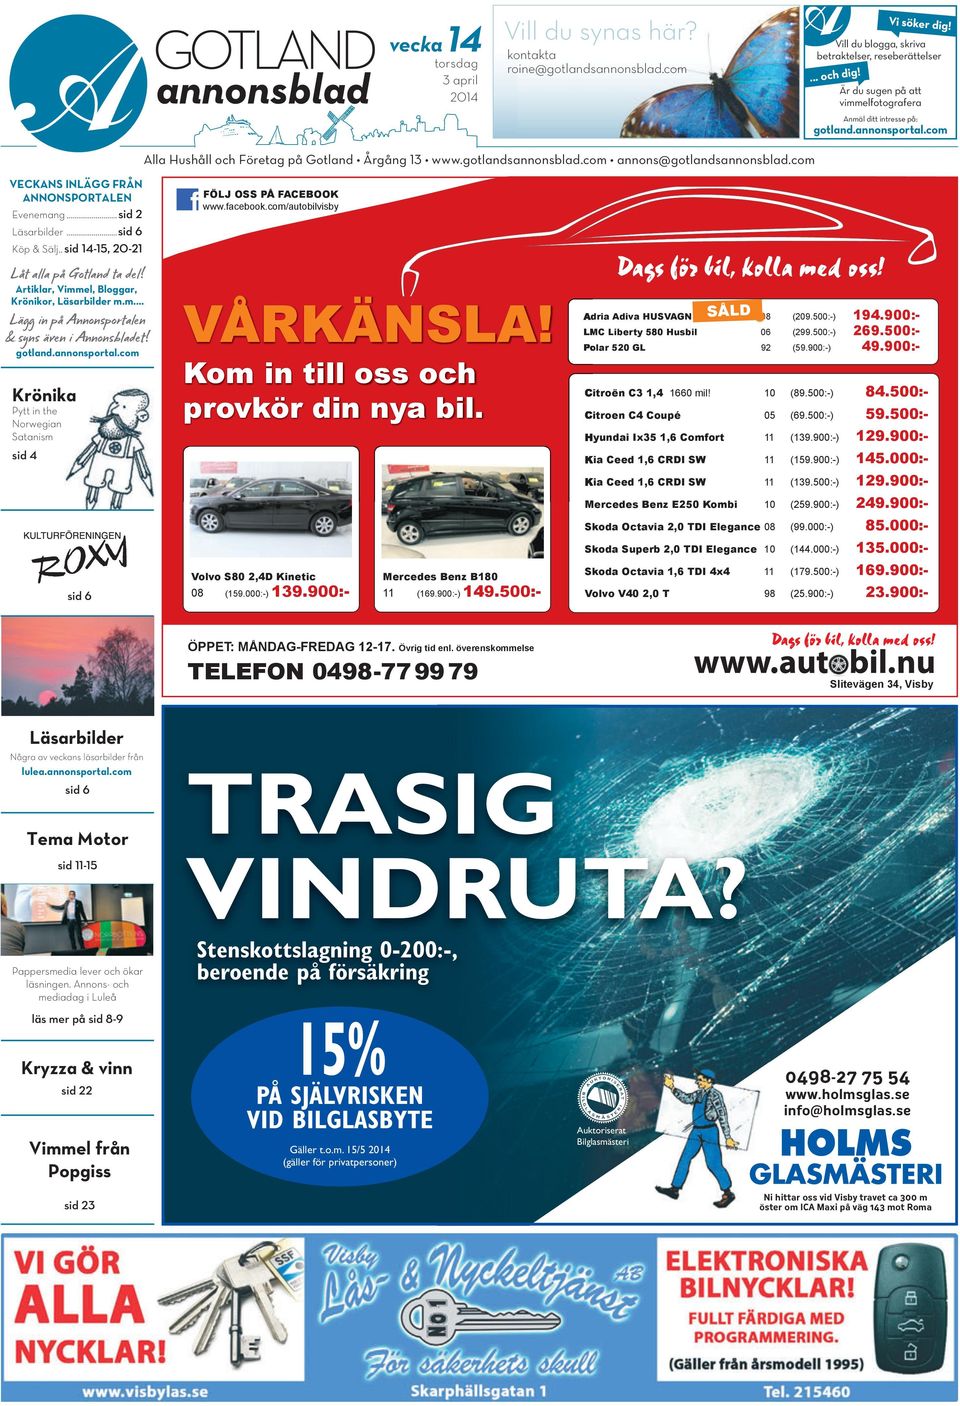 com annons@gotlandsannonsblad.com VECKANS INLÄGG FRÅN ANNONSPORTALEN Evenemang...sid 2 Läsarbilder...sid 6 Köp & Sälj.. sid 14-15, 20-21 Låt alla på Gotland ta del!